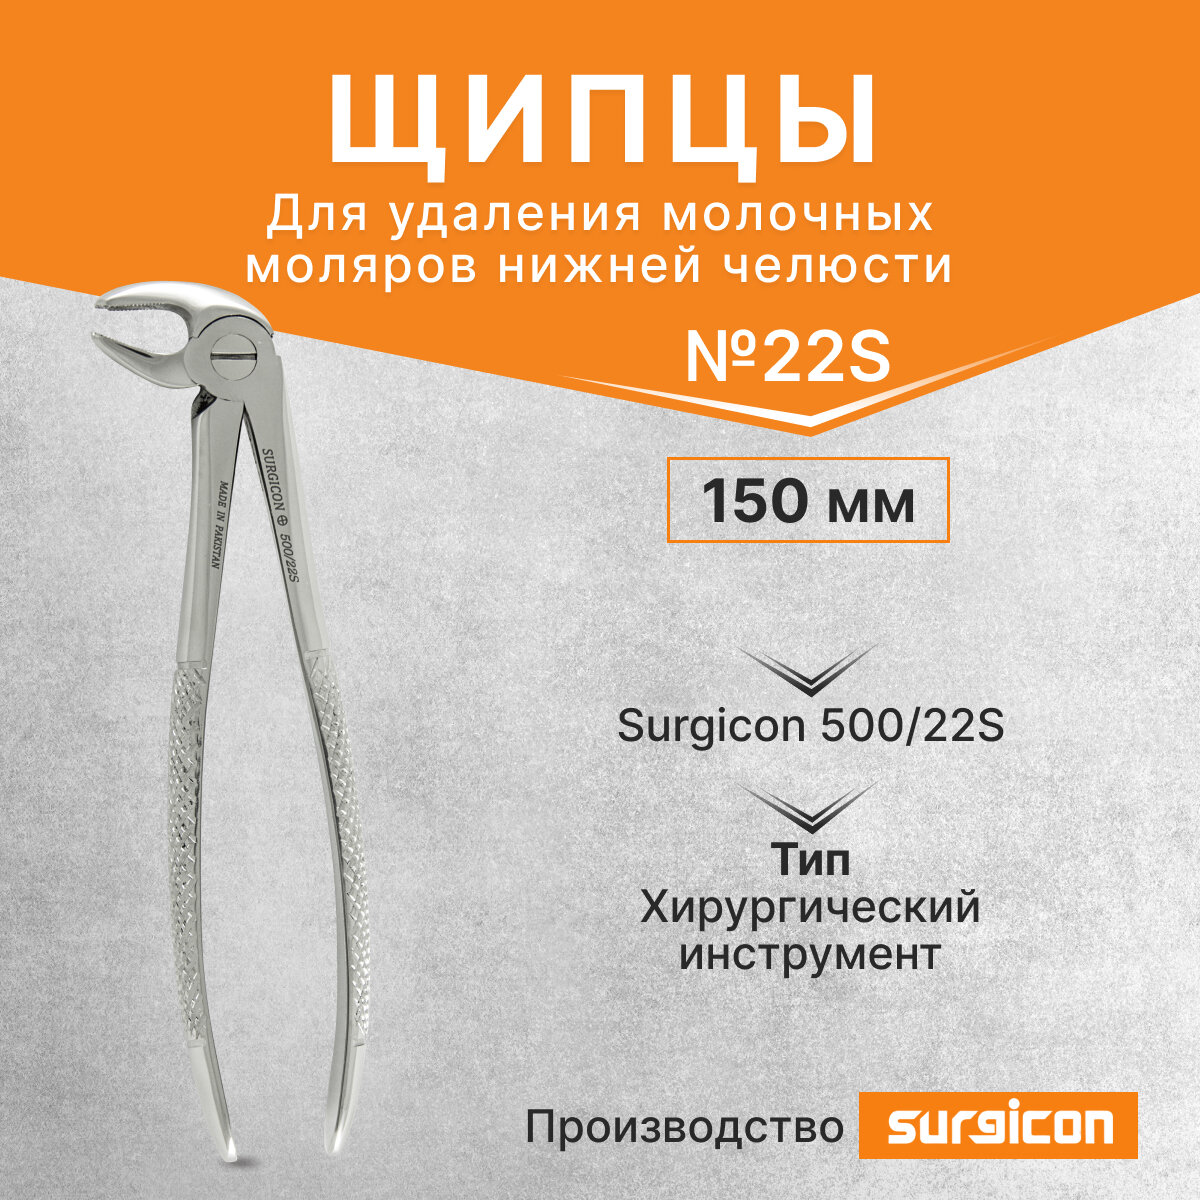 Щипцы для удаления молочных моляров нижней челюсти №22А 150 мм Surgicon 500/22S